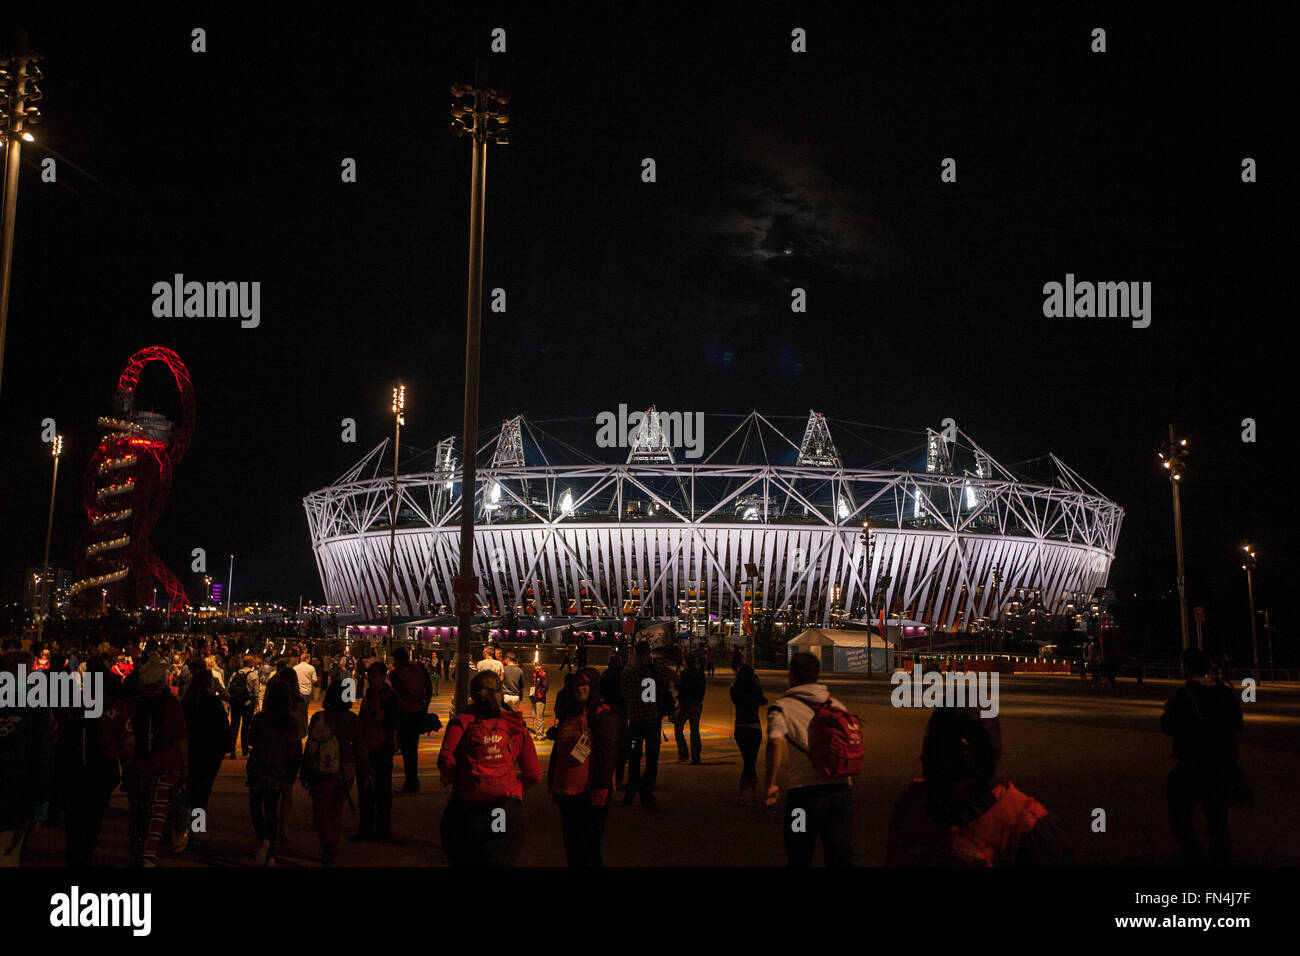 Olympic Stadium at night during Olympics,London,2012,England,UK, Europe. Stock Photo